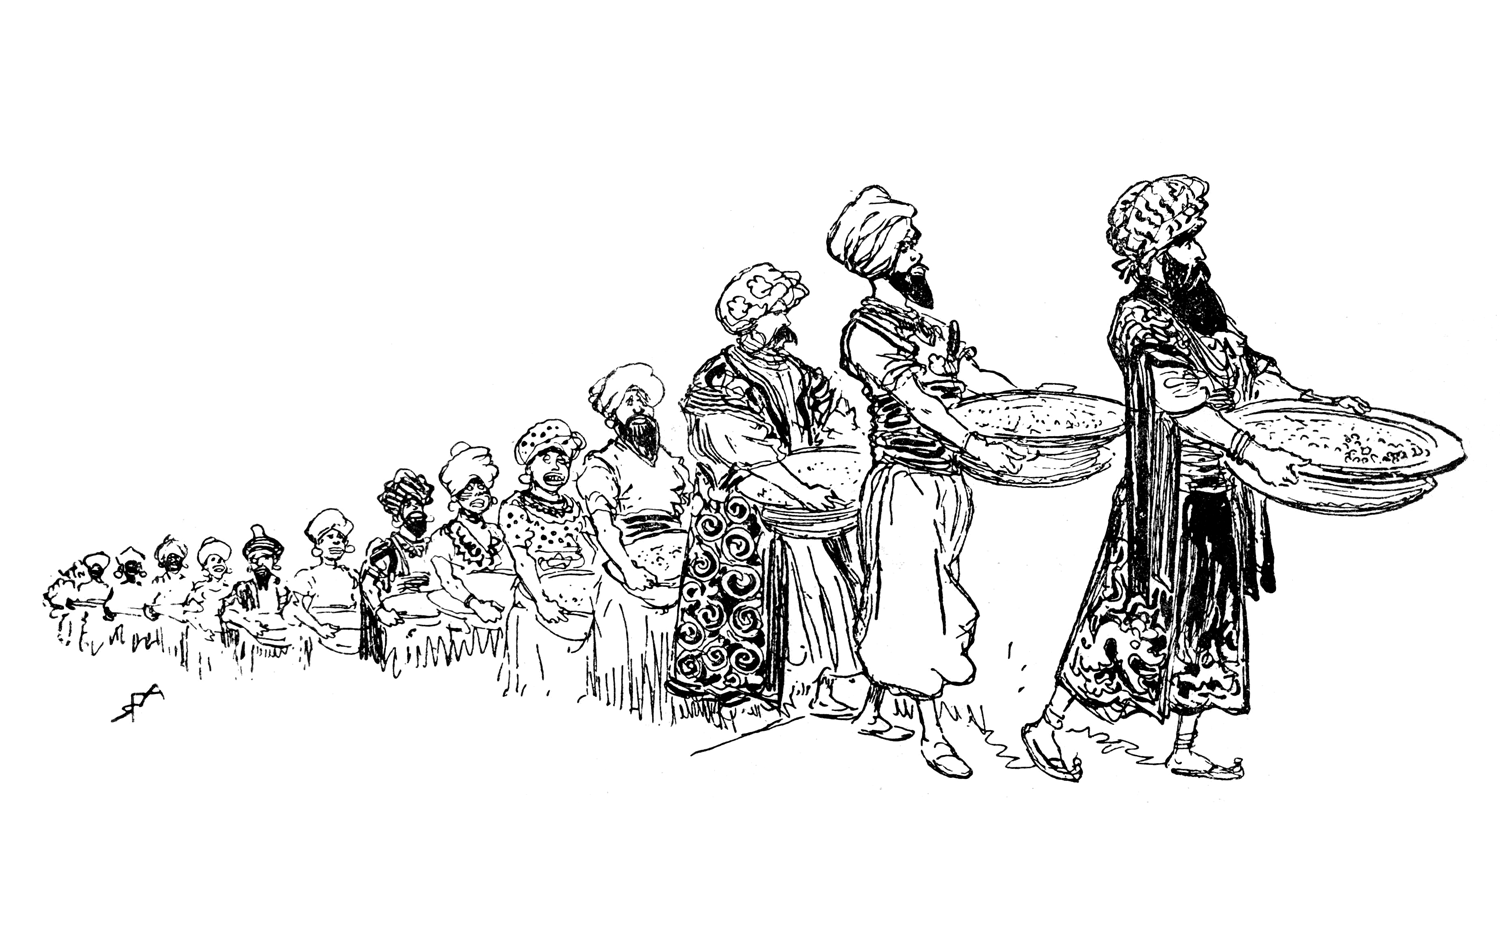 Gli abitanti della terra deserta di Agrabah portano il loro cibo, uno dopo l'altro